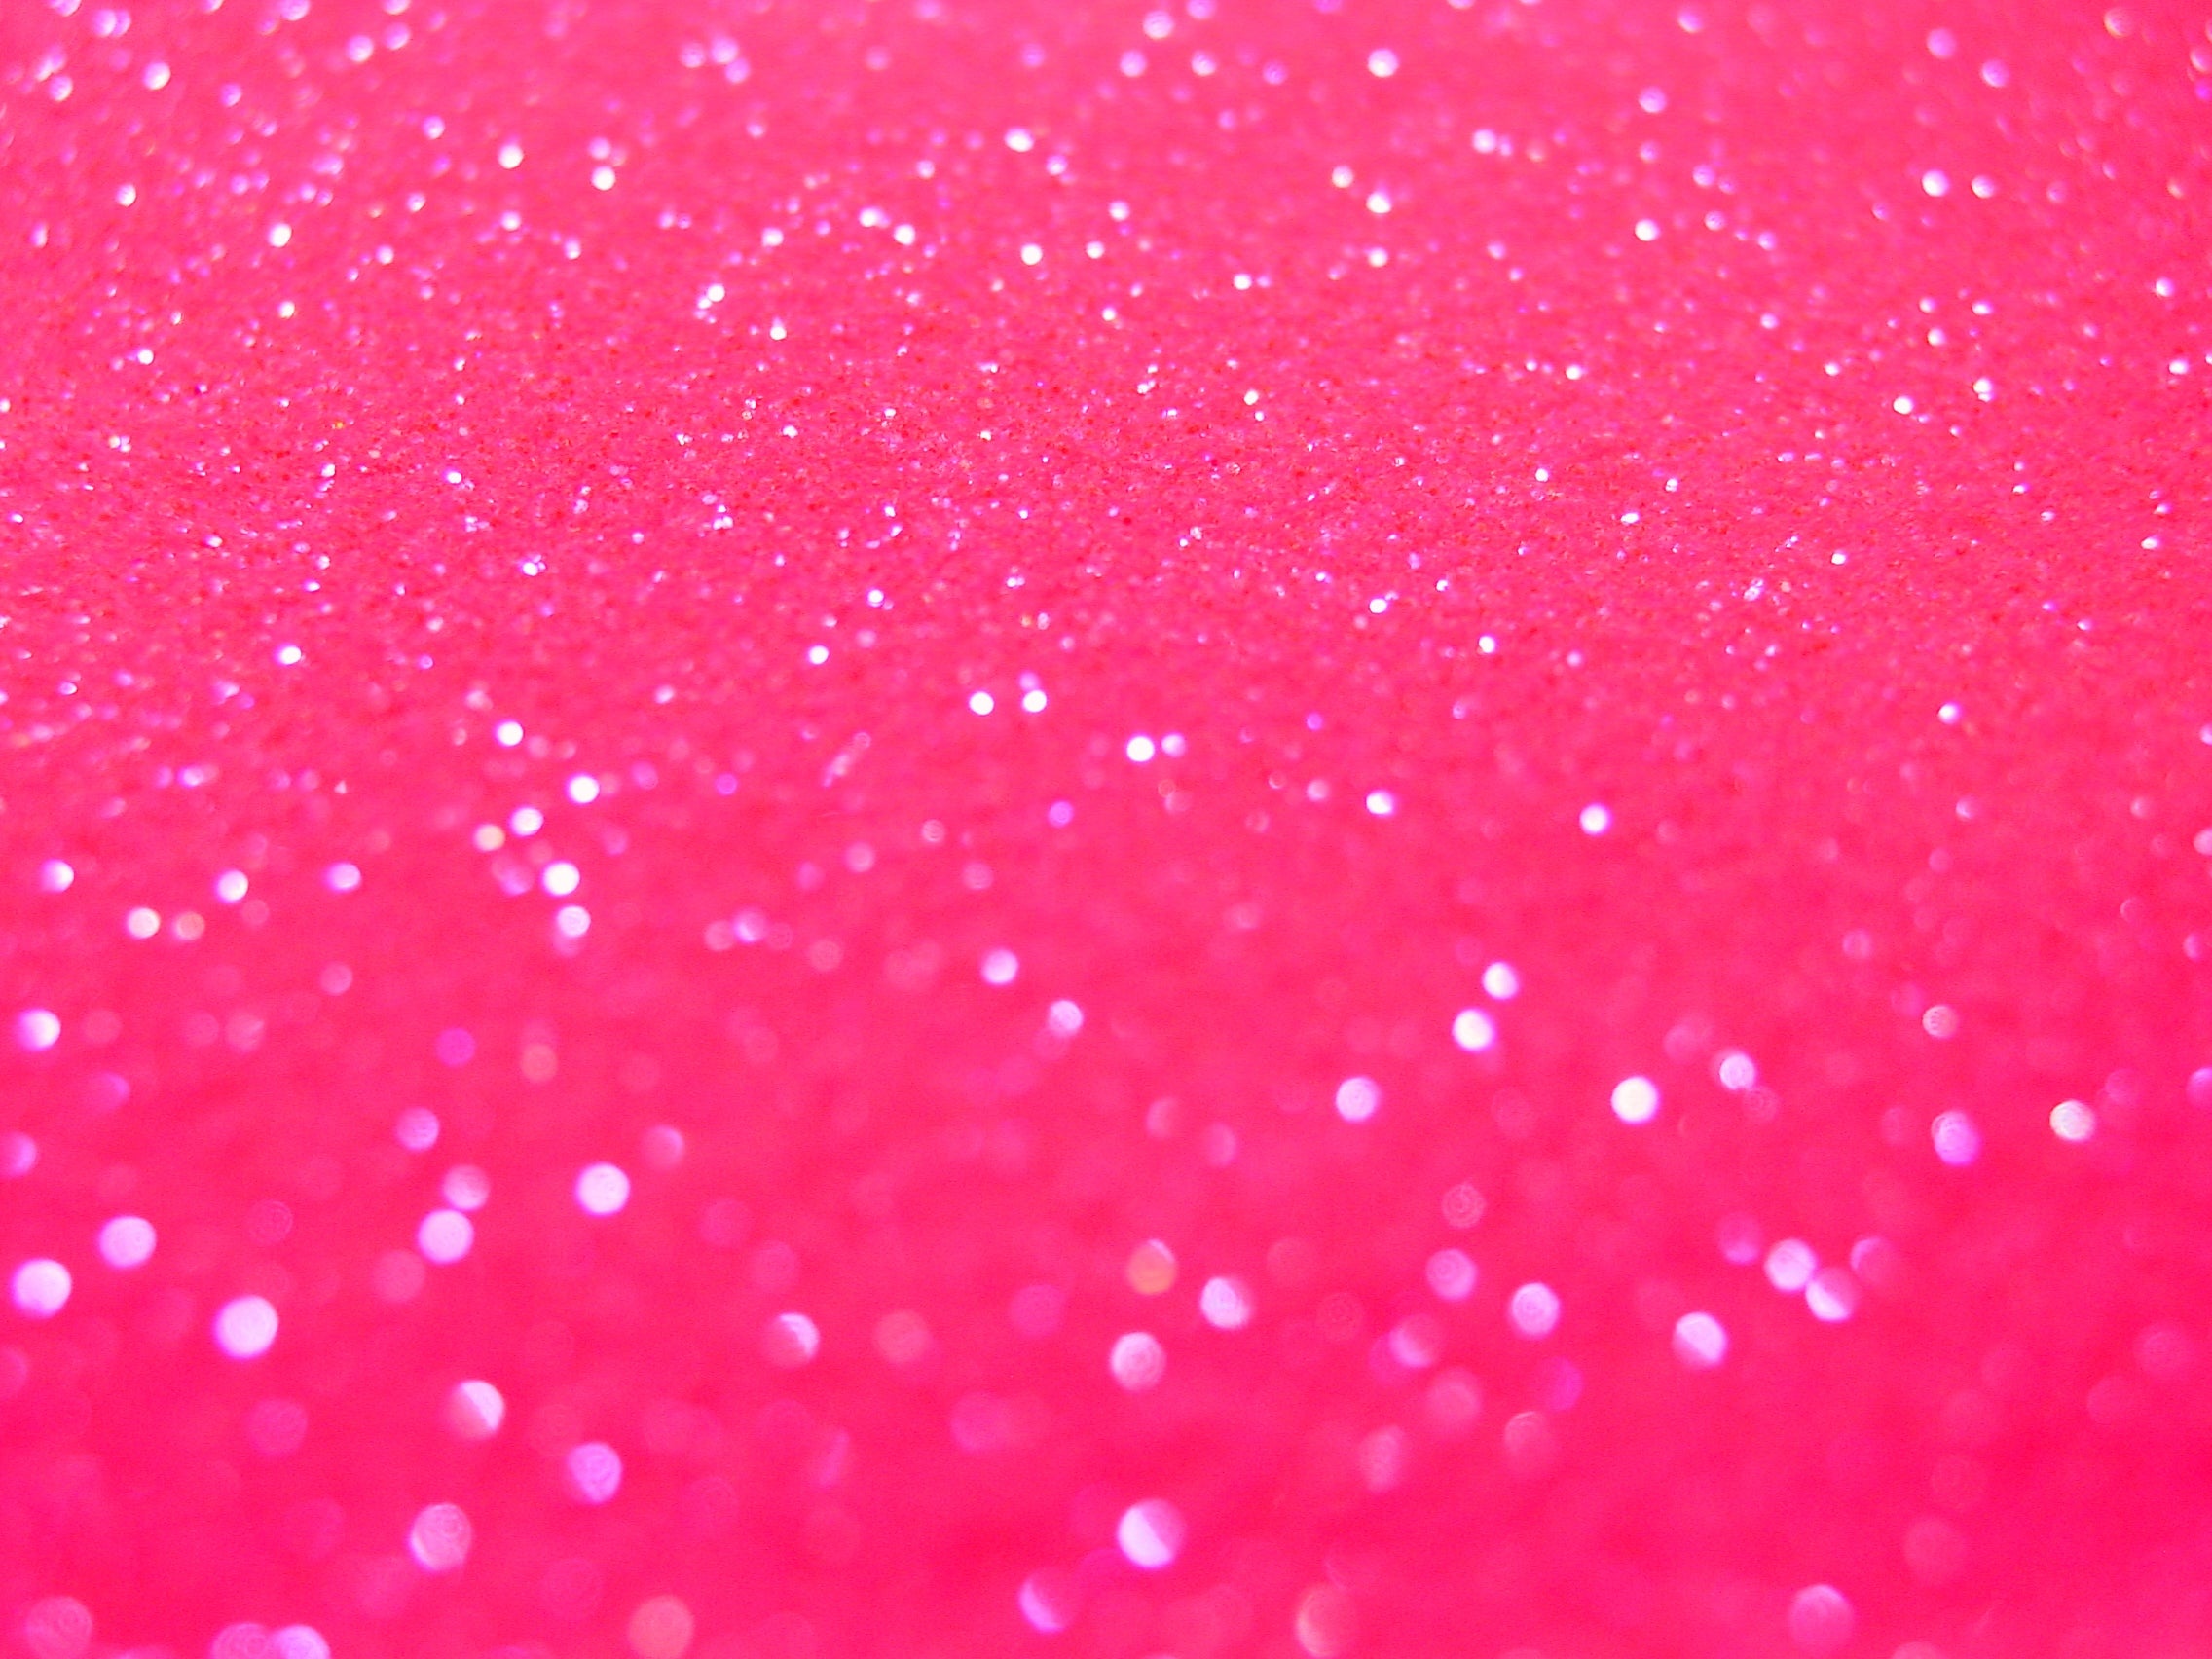 Neon Pink Glitter